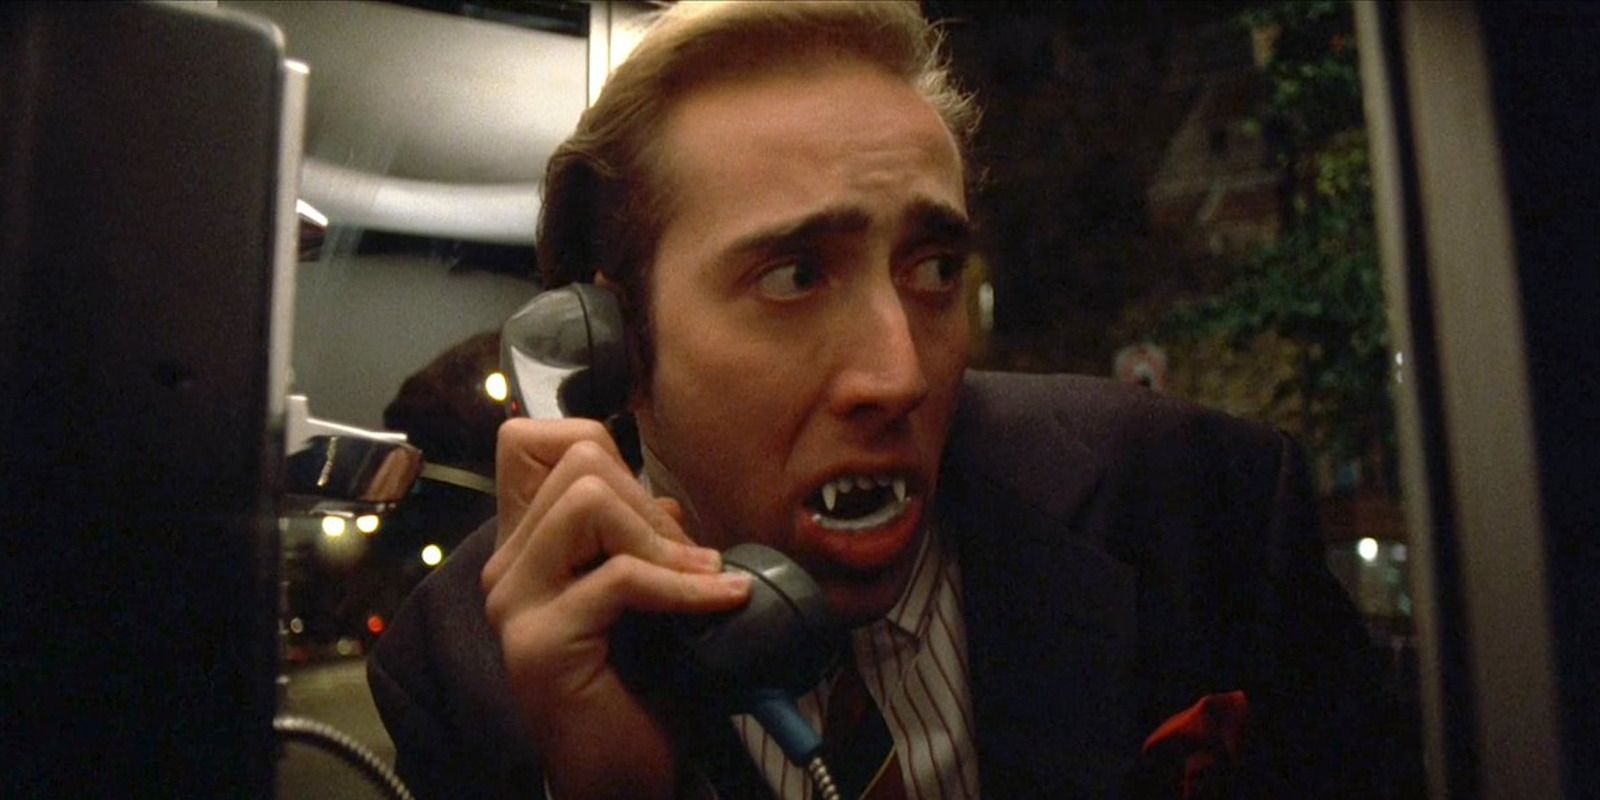 Nicolas Cage as Peter Loew wearing fake vampire teeth in Vampire's Kiss